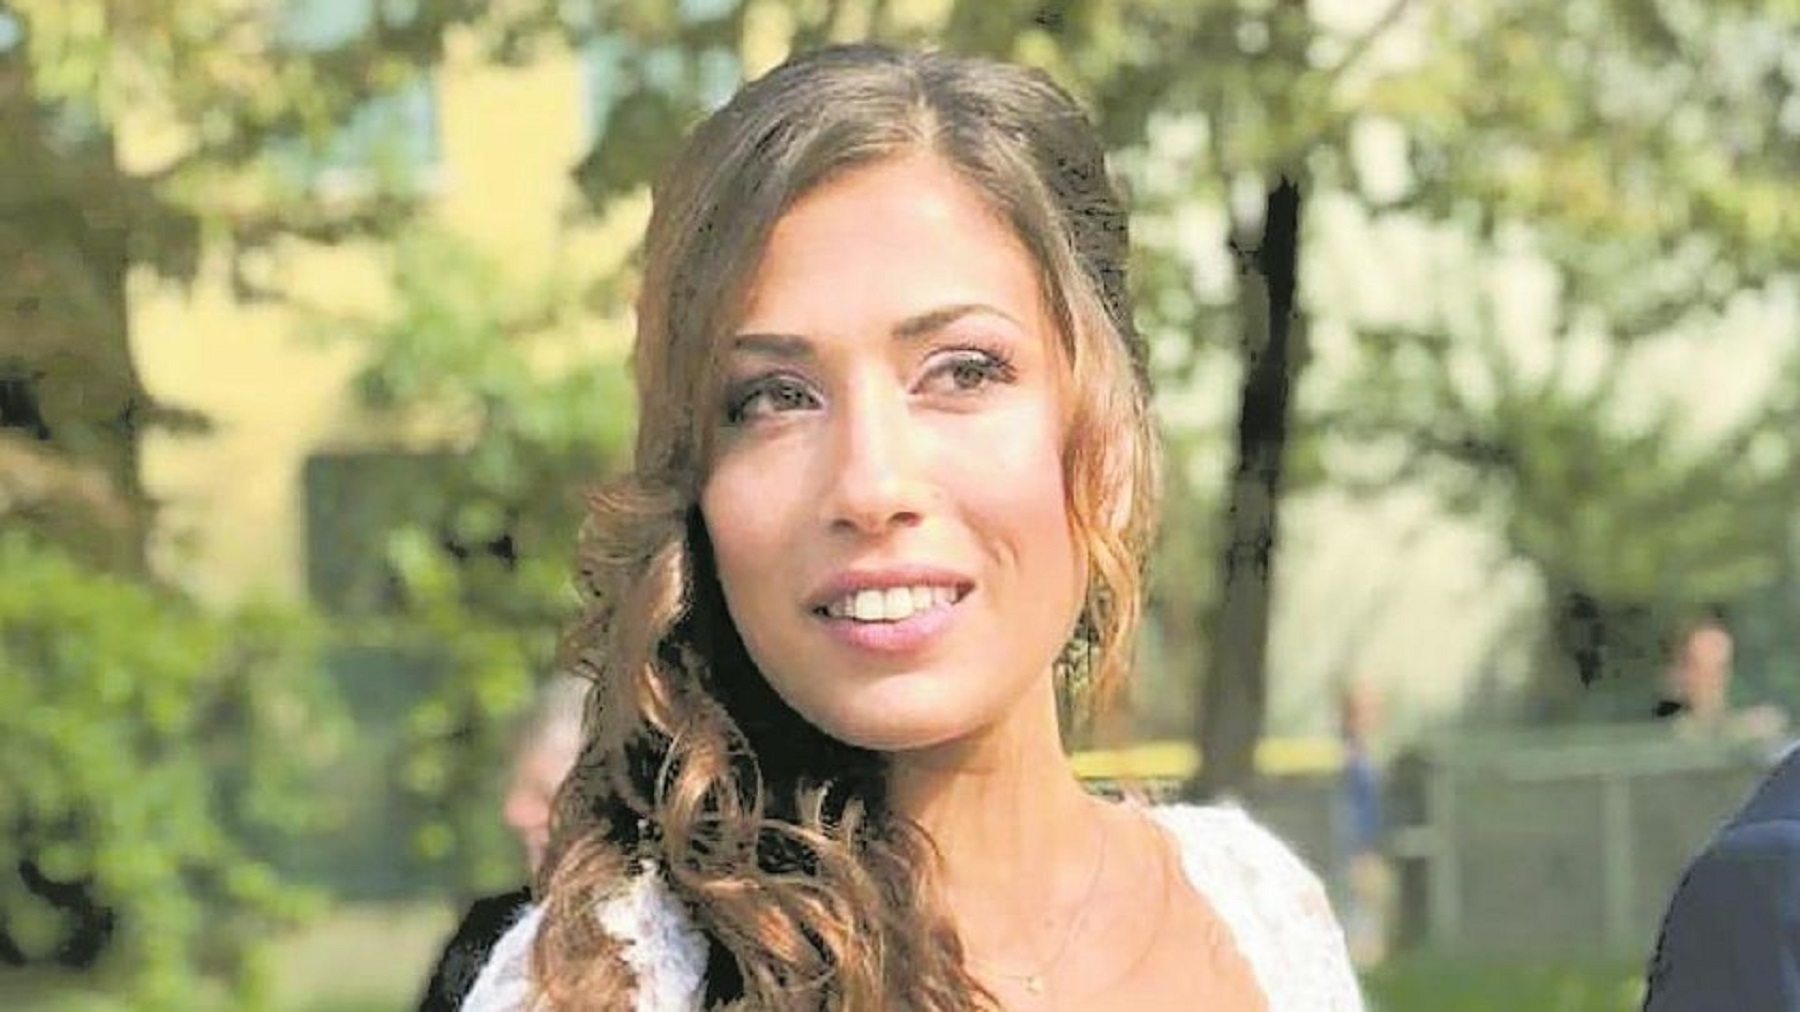 Daiana Vianello